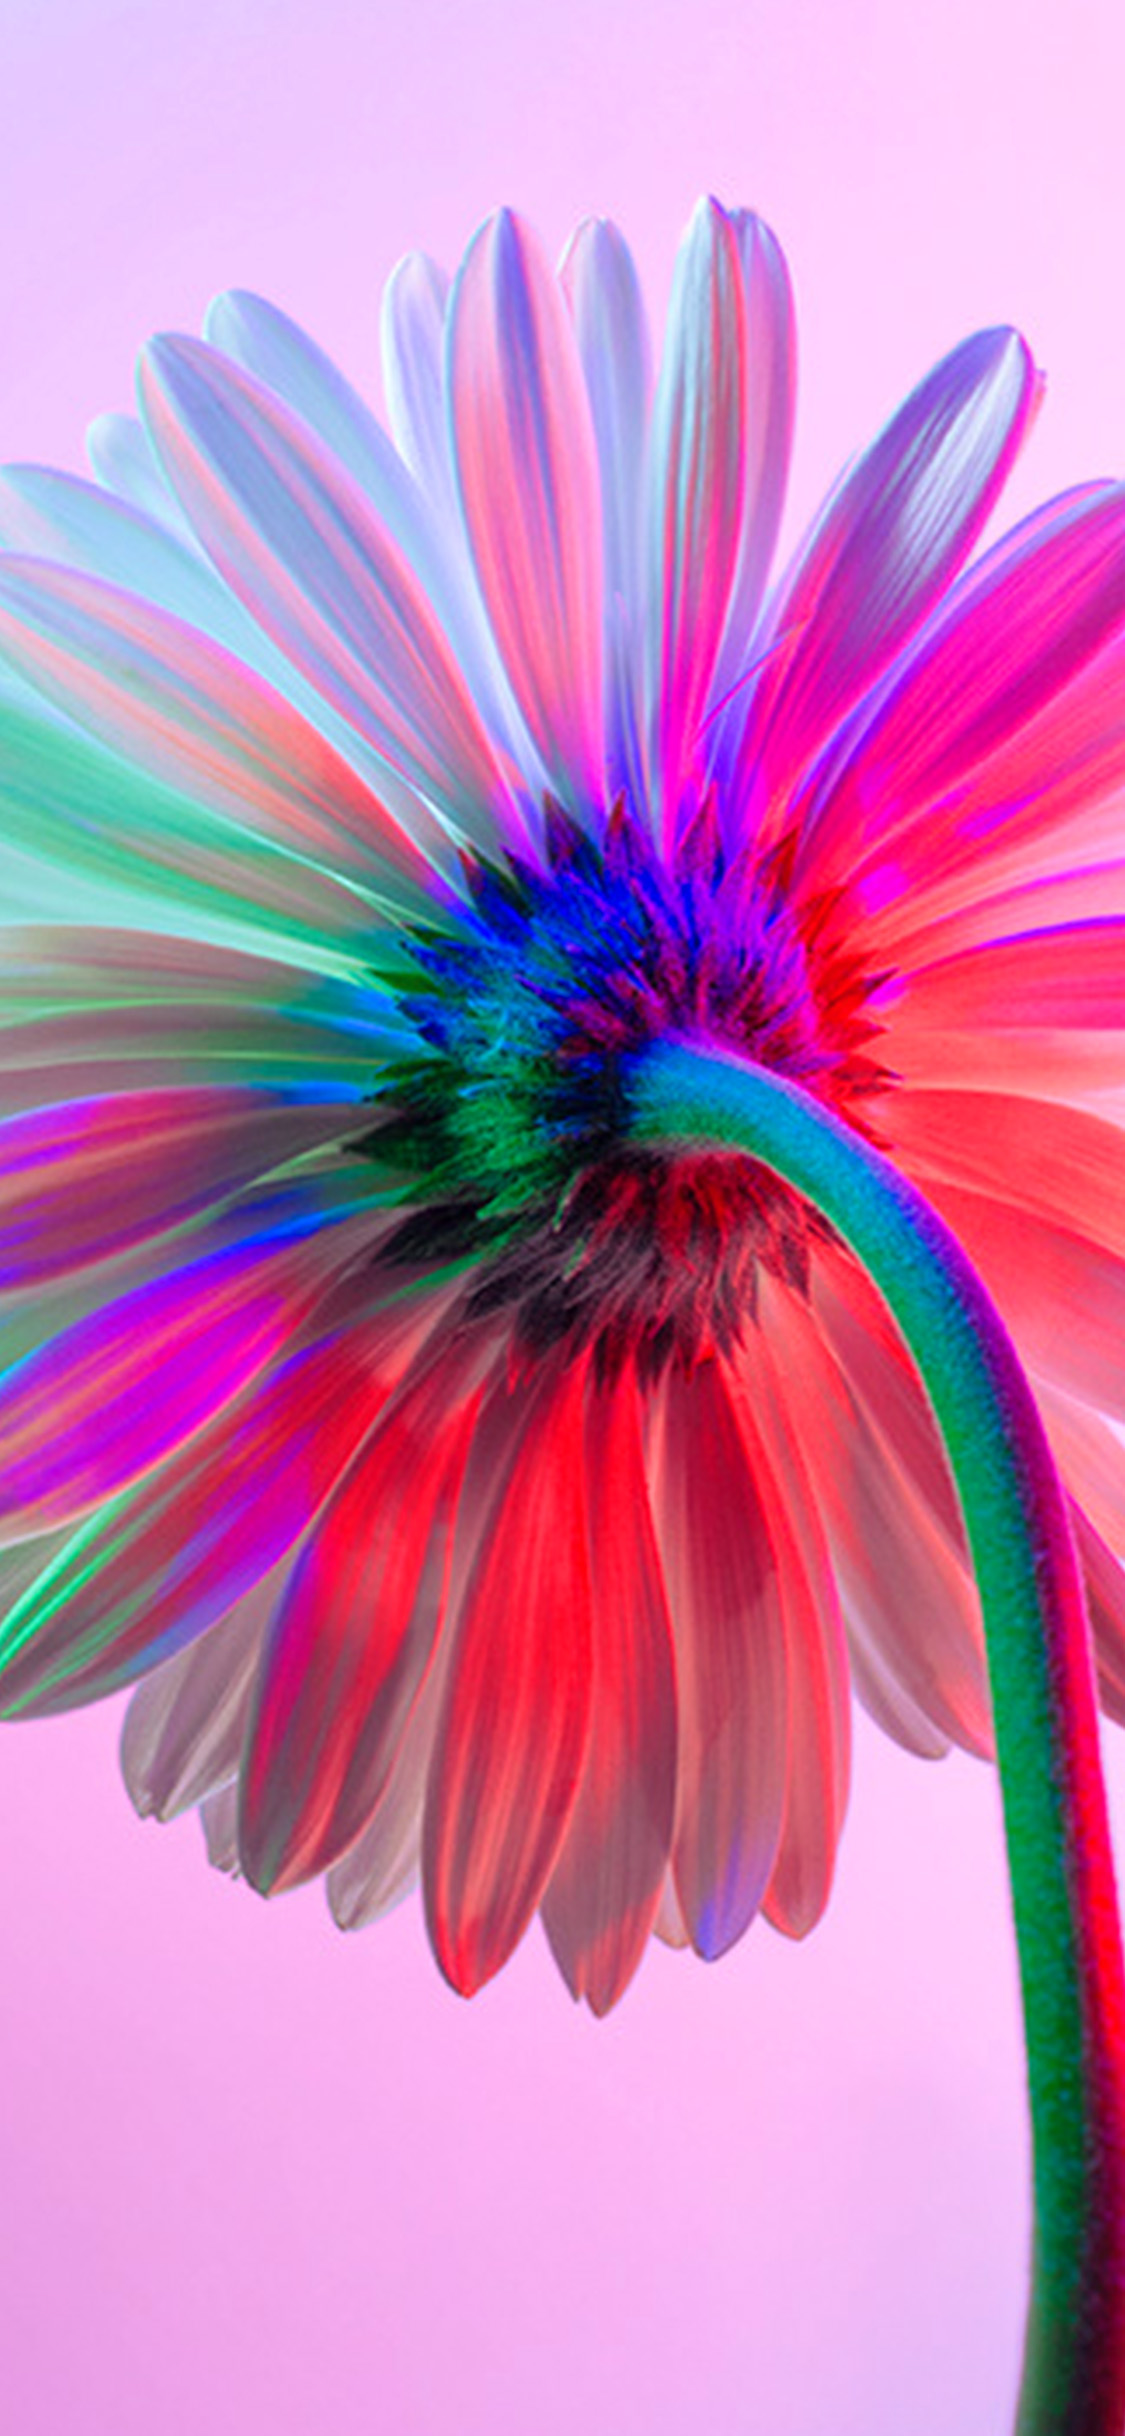 iPhone X wallpaper. art flower rainbow